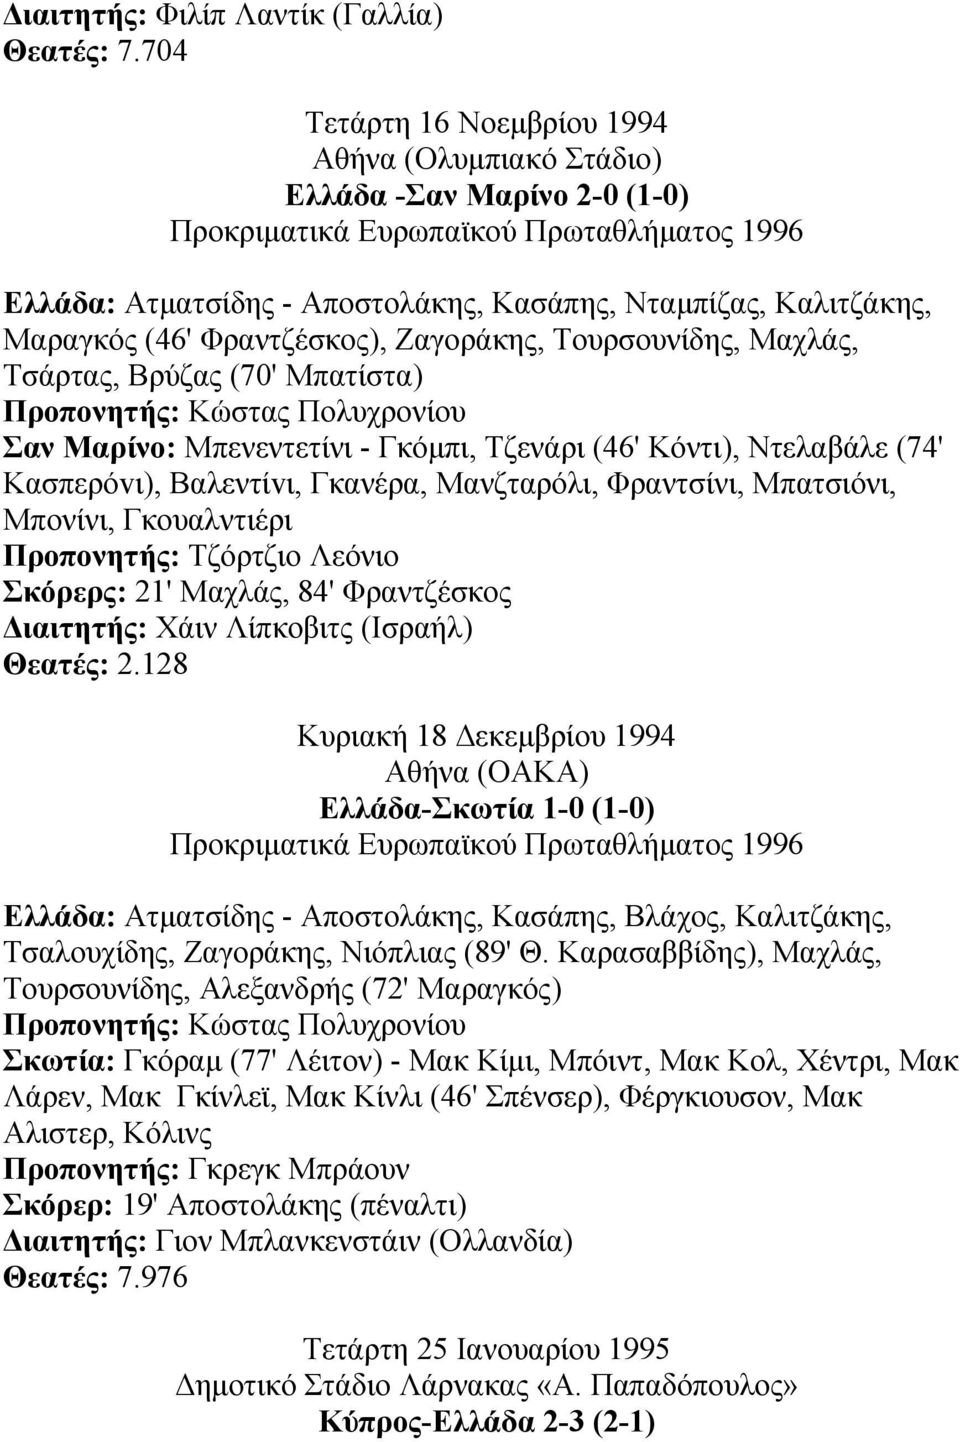 Μαραγκός (46' Φραντζέσκος), Ζαγοράκης, Τουρσουνίδης, Μαχλάς, Τσάρτας, Βρύζας (70' Μπατίστα) Σαν Μαρίνο: Μπενεντετίνι - Γκόµπι, Τζενάρι (46' Κόντι), Ντελαβάλε (74' Κασπερόvι), Bαλεντίvι, Γκανέρα,